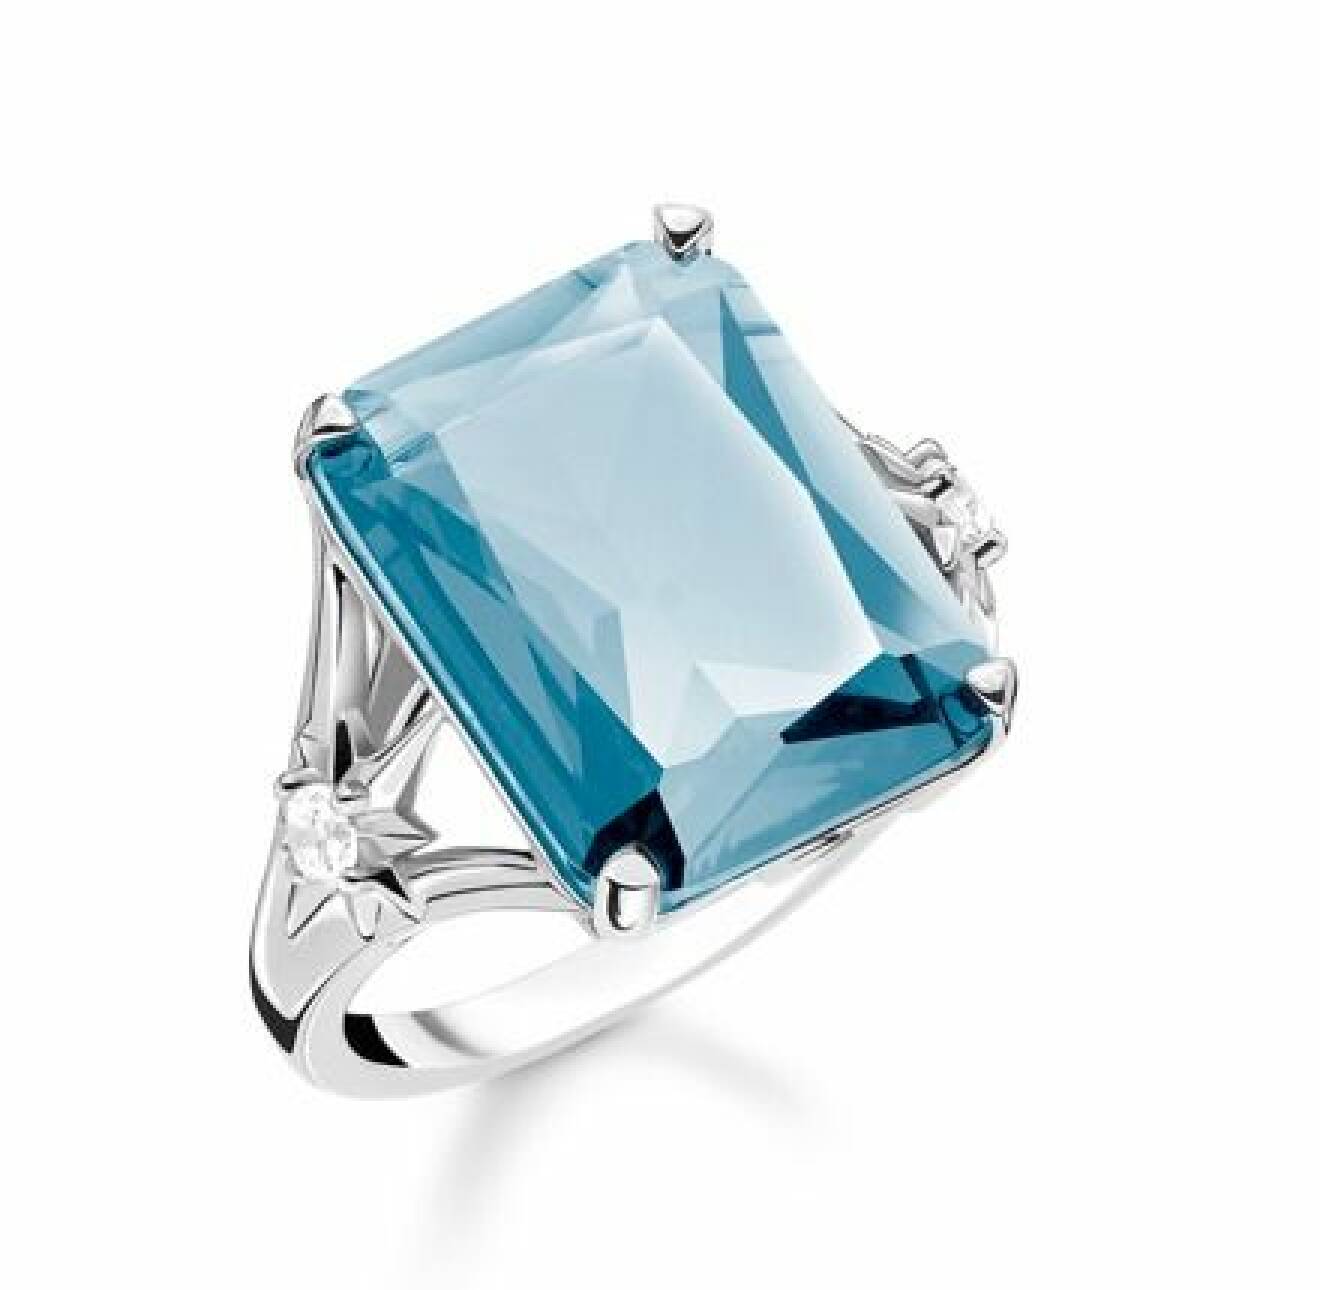 Ring i silver med en stor, fyrkantig blå sten.stjärnor i sidan med en vit rund sten på. Oversizad ring från Thomas Sabo.